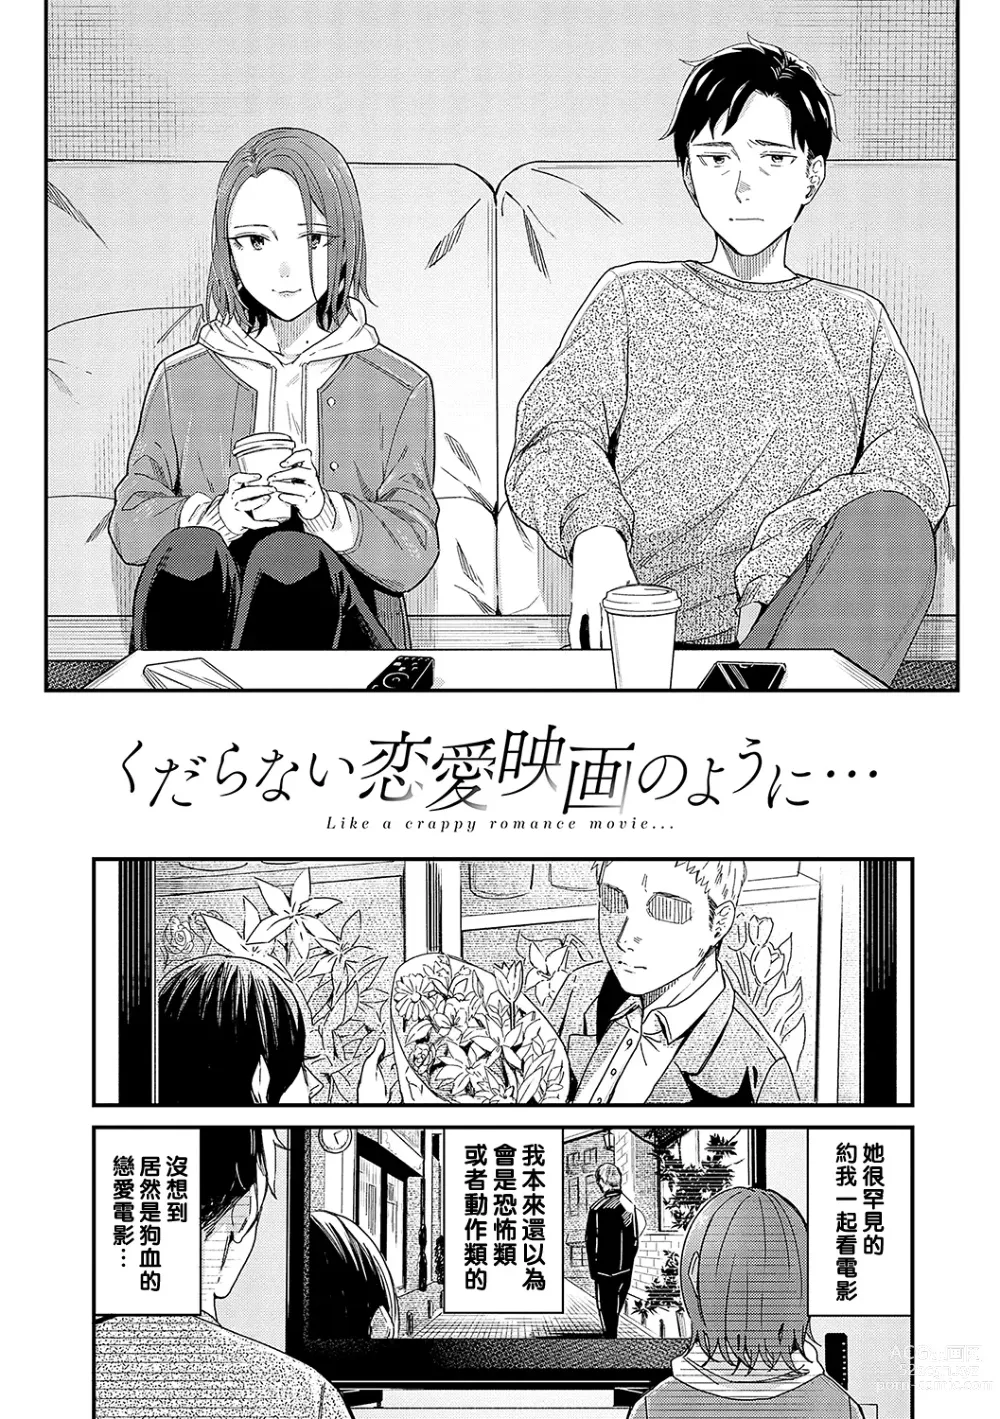 Page 1 of manga Kudaranai Renai Eiga no You ni... - Like a crappy romance movie...